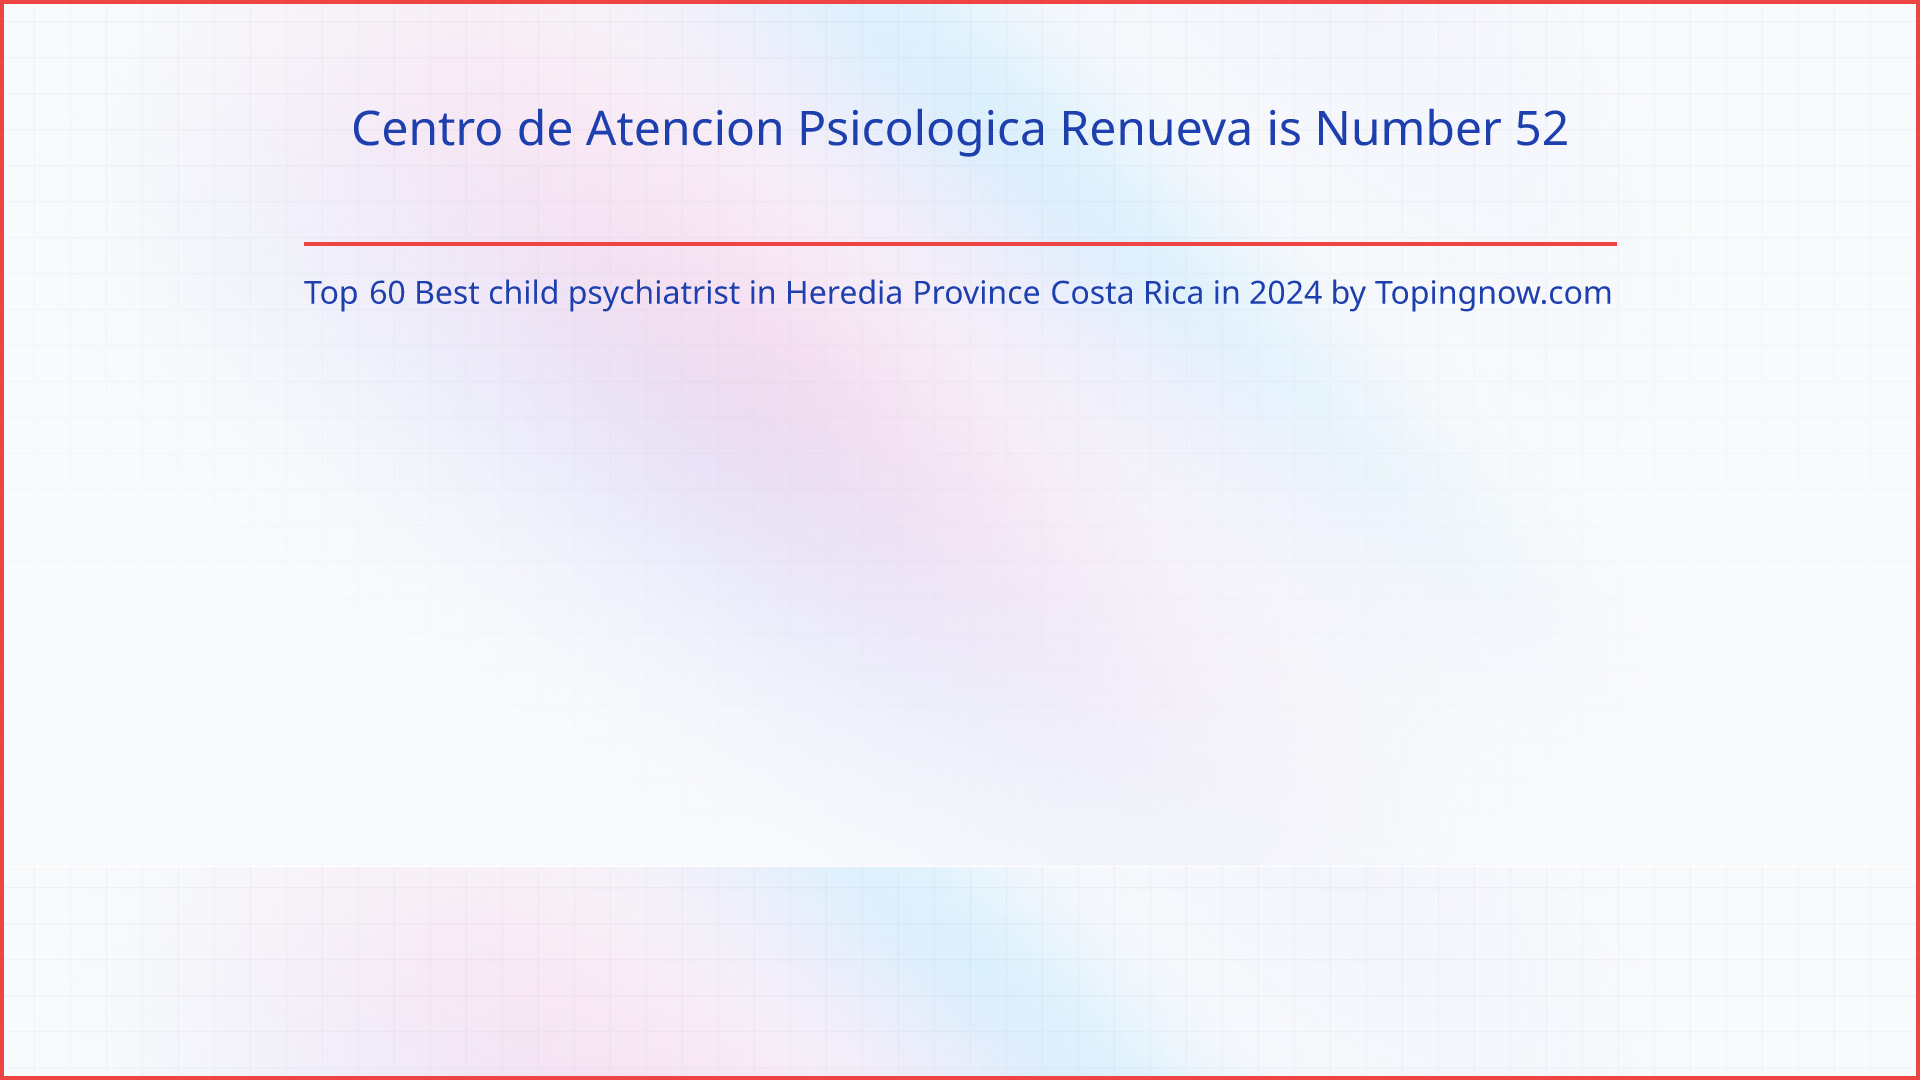 Centro de Atencion Psicologica Renueva: Top 60 Best child psychiatrist in Heredia Province Costa Rica in 2024